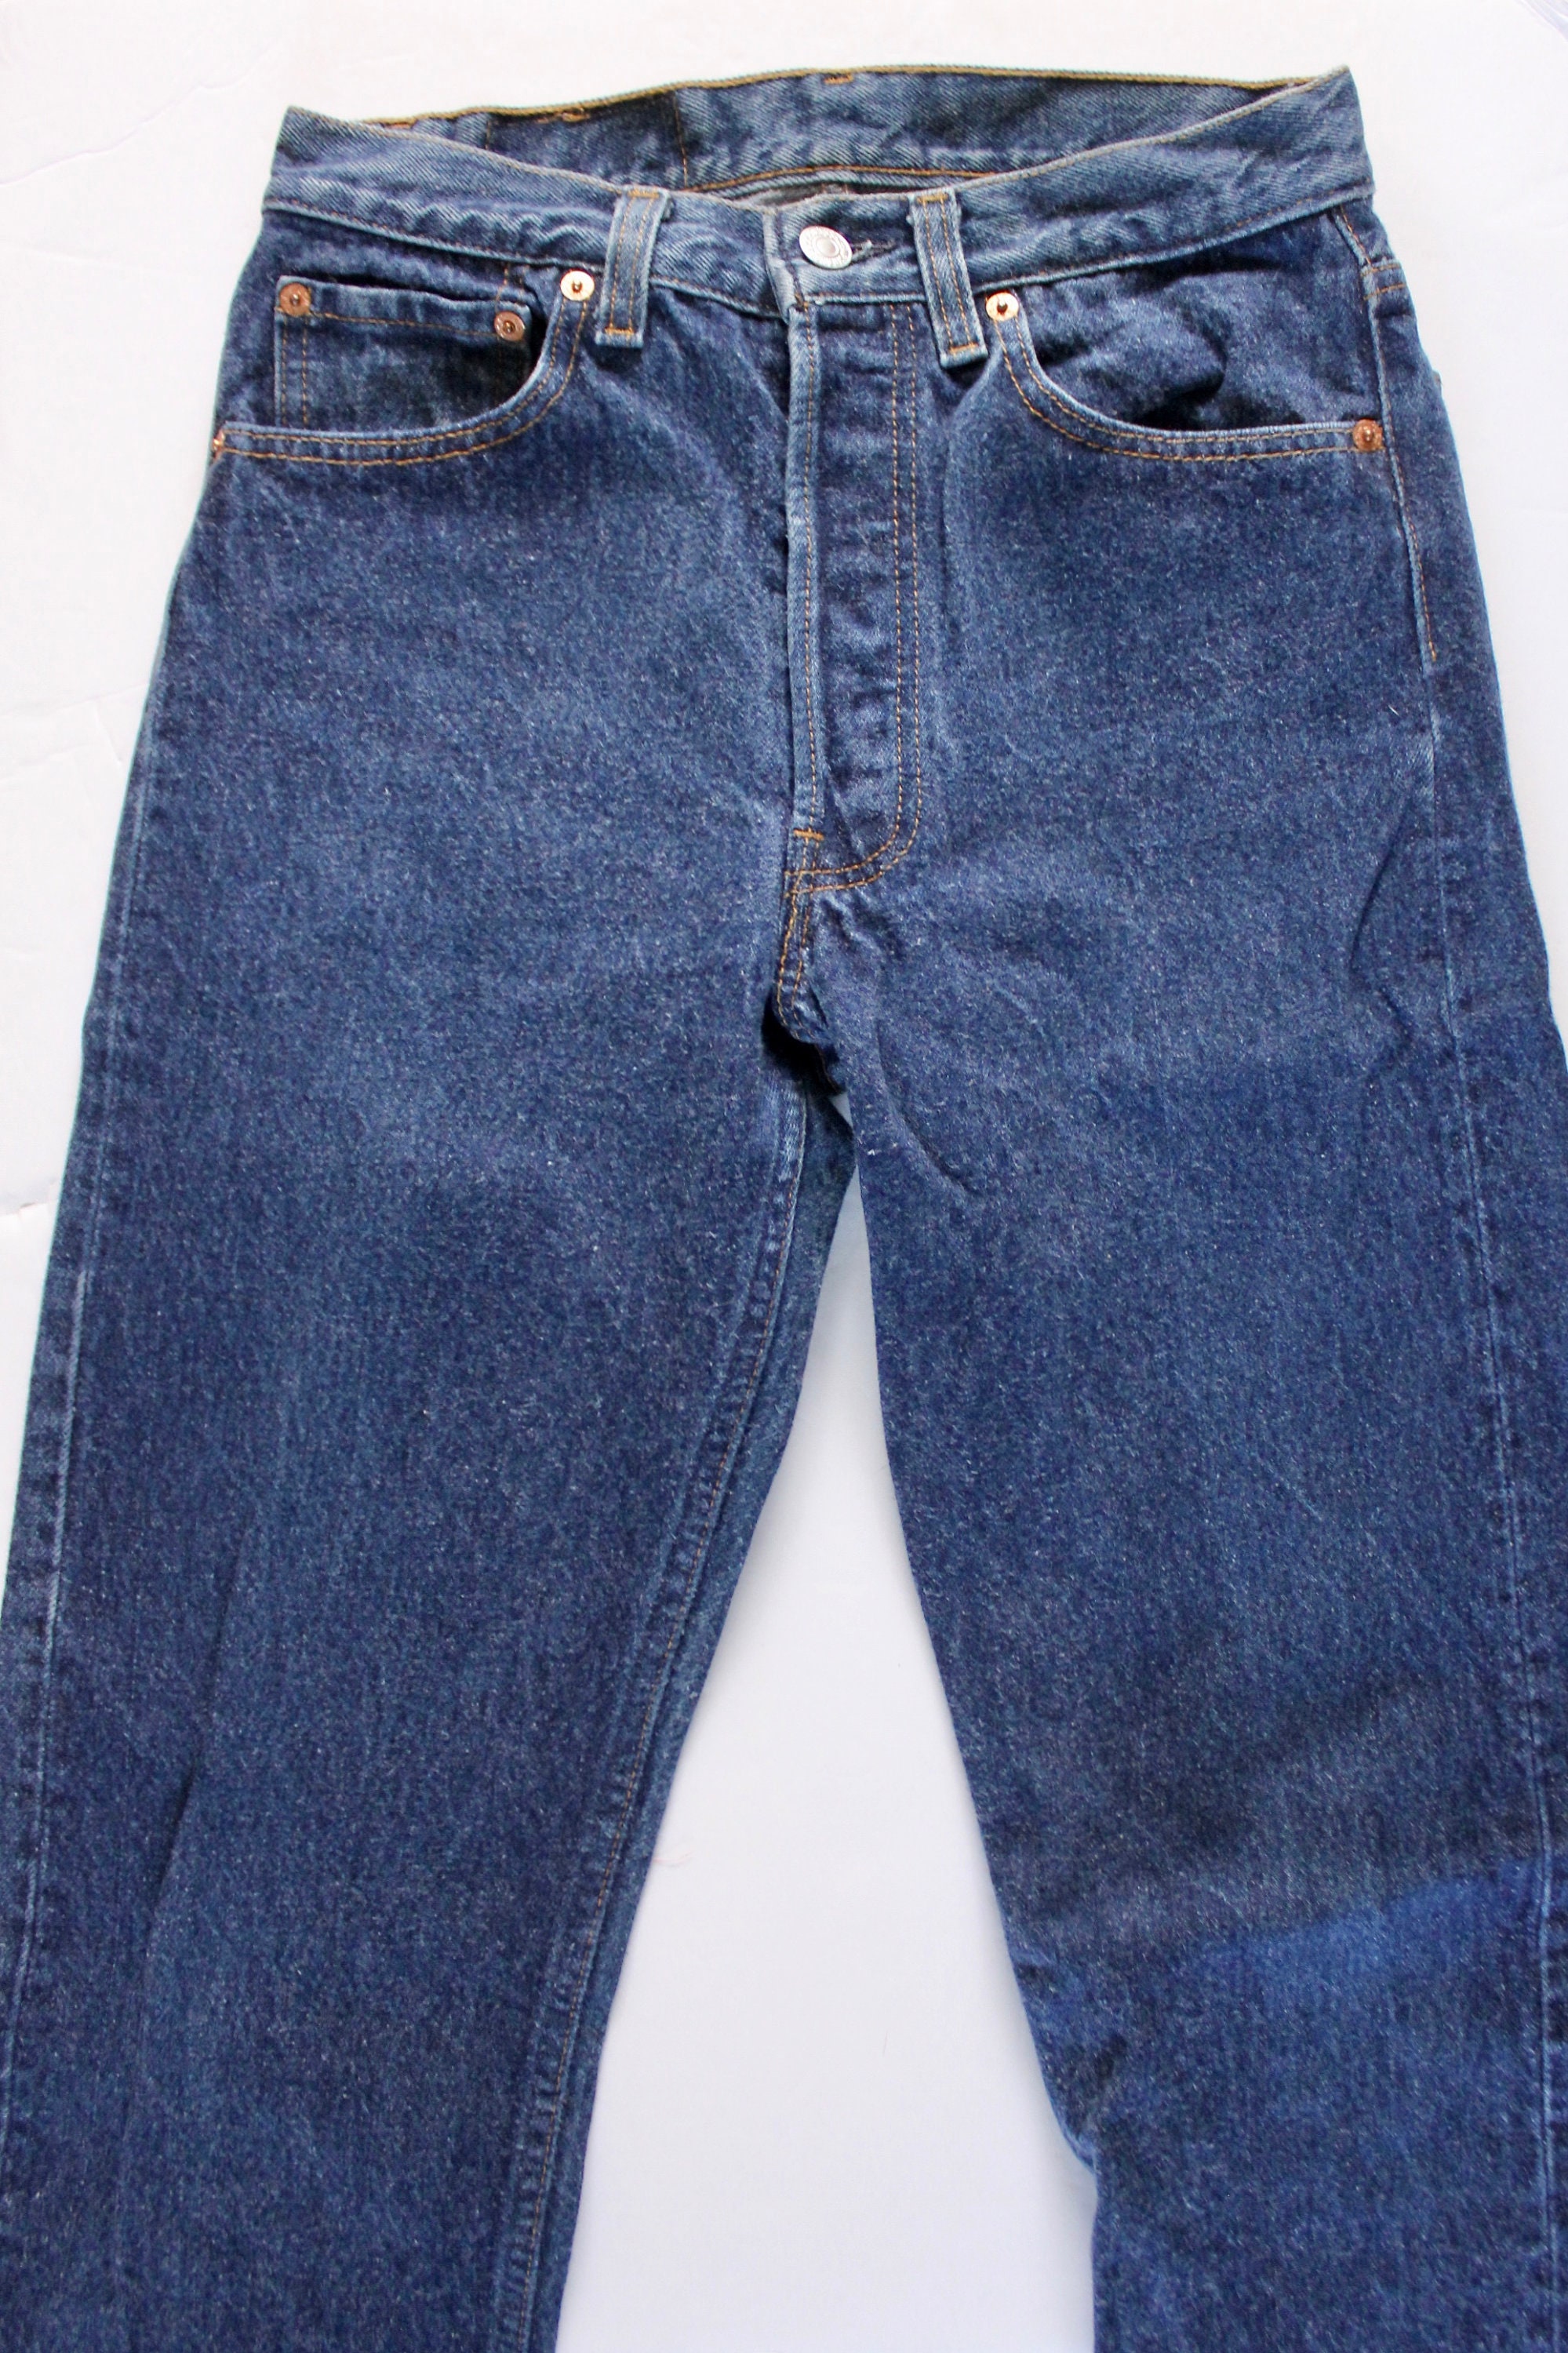 Vintage Levi's 501 Denim Jeans Levis 501 High Waist Denim Jeans Dark ...